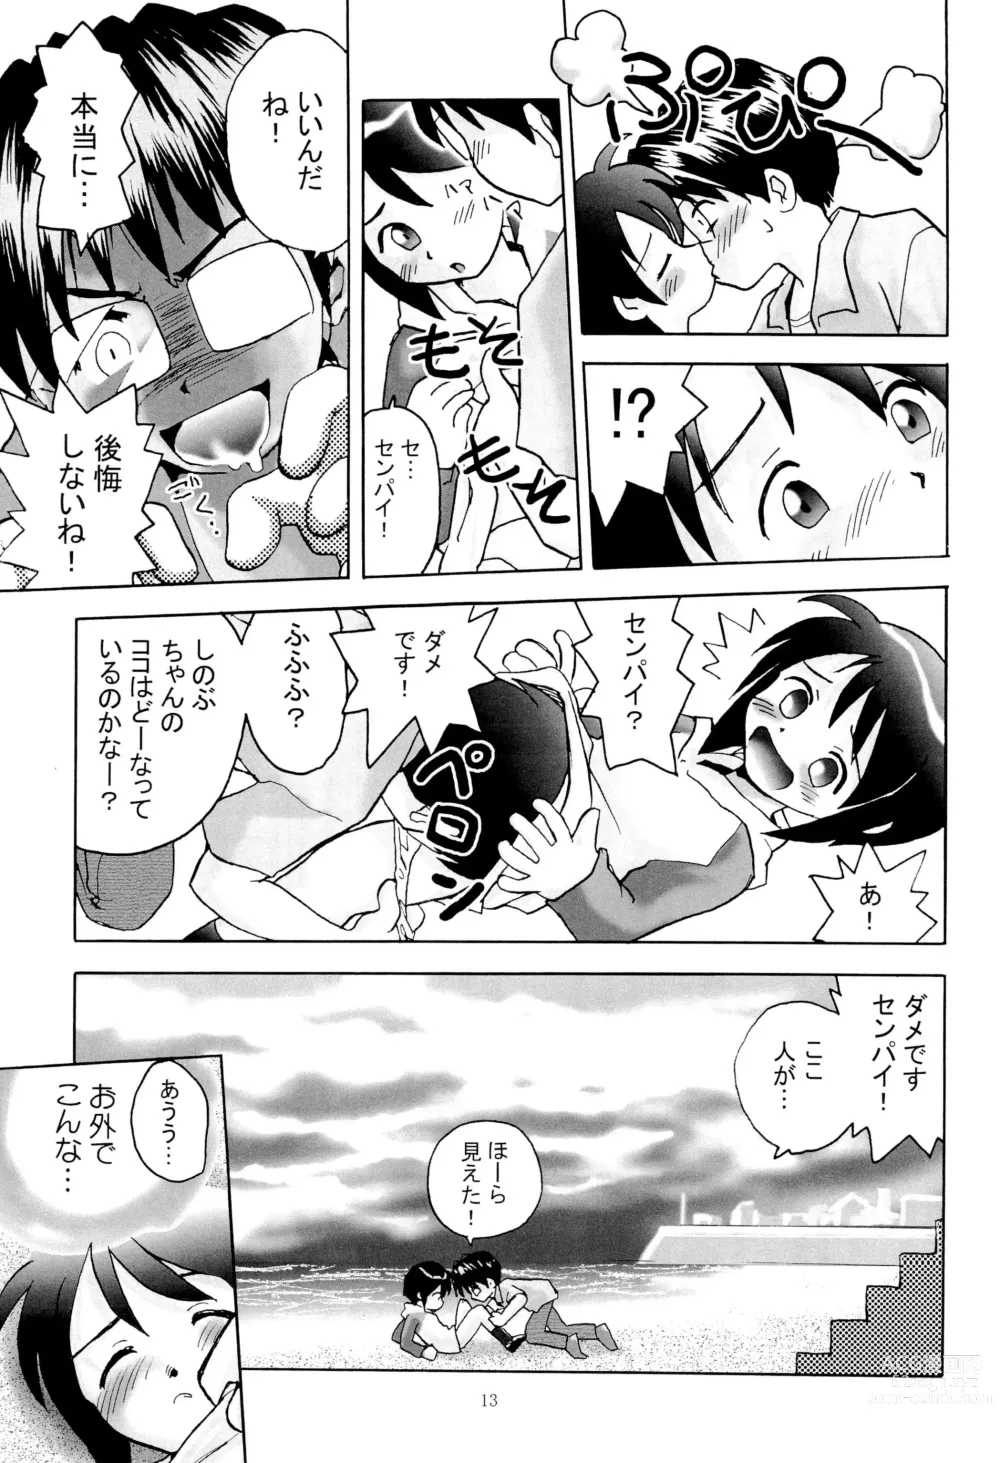 Page 15 of doujinshi Shino Buna